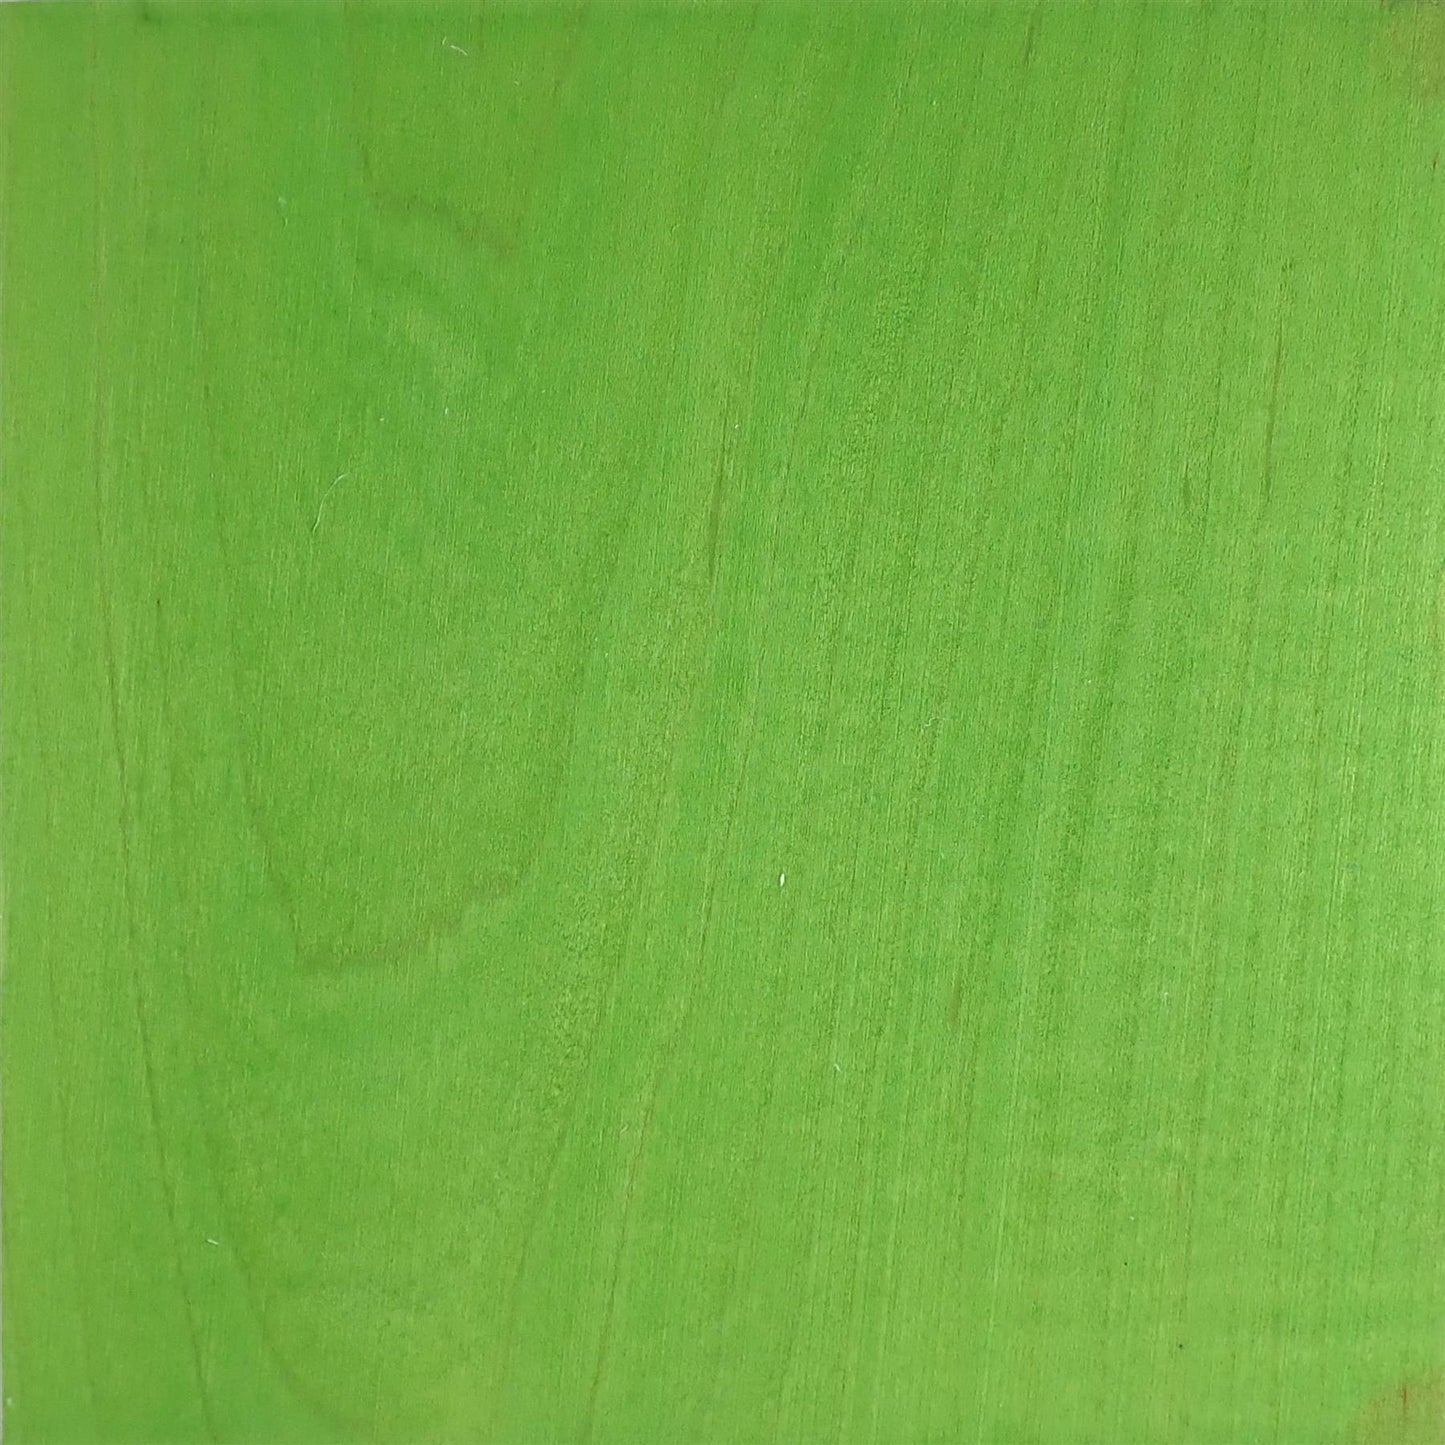 dartfords Bright Green Water Soluble Aniline Wood Dye Powder - 28g 1Oz